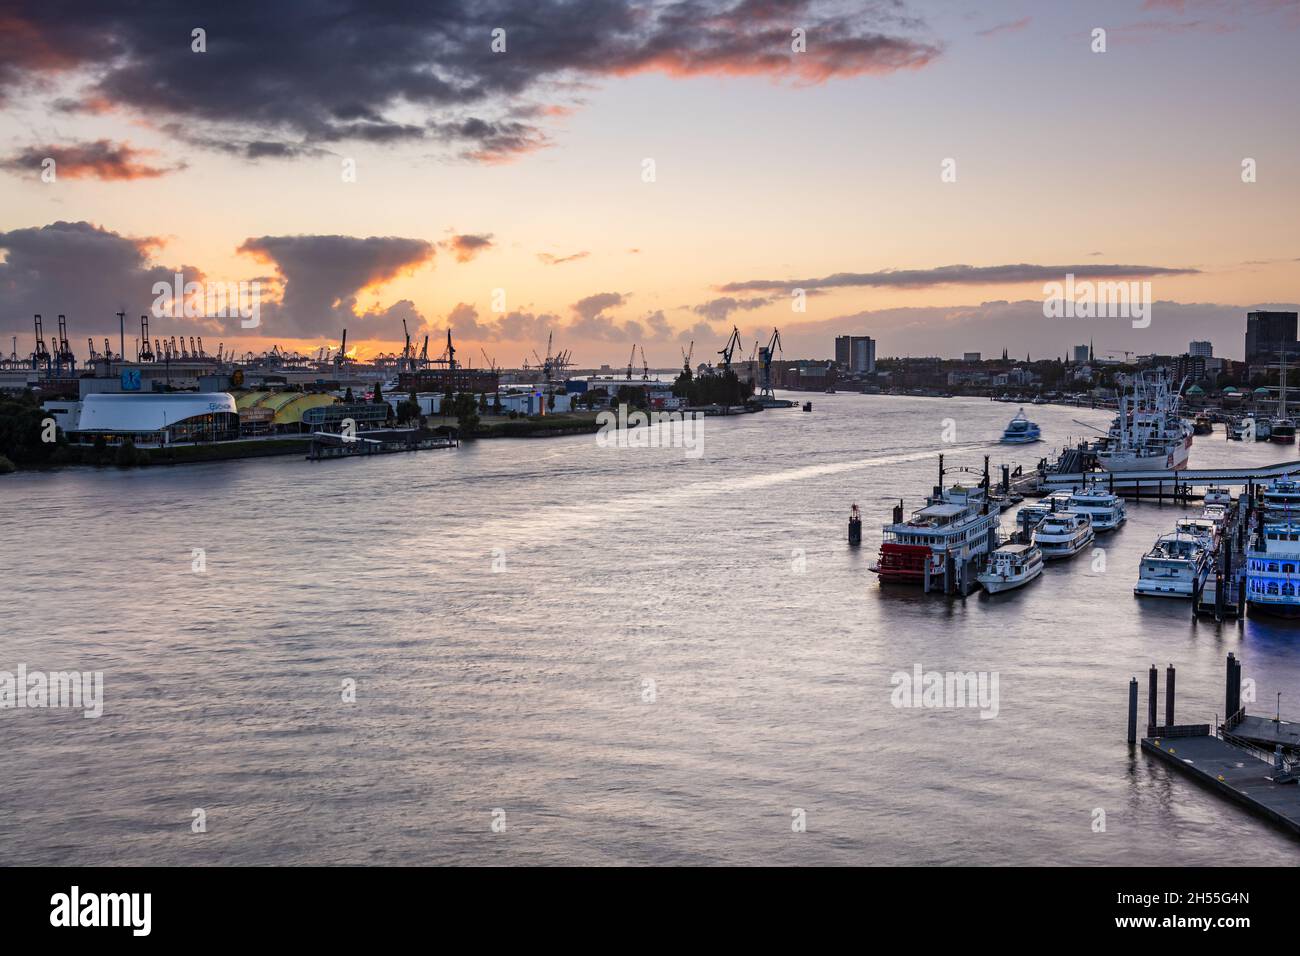 Hamburg, Deutschland: Sonnenuntergang im Hamburger Hafen. Luftaufnahme des Hamburger Hafens. Der Hamburger Hafen ist ein Seehafen an der Elbe Stockfoto